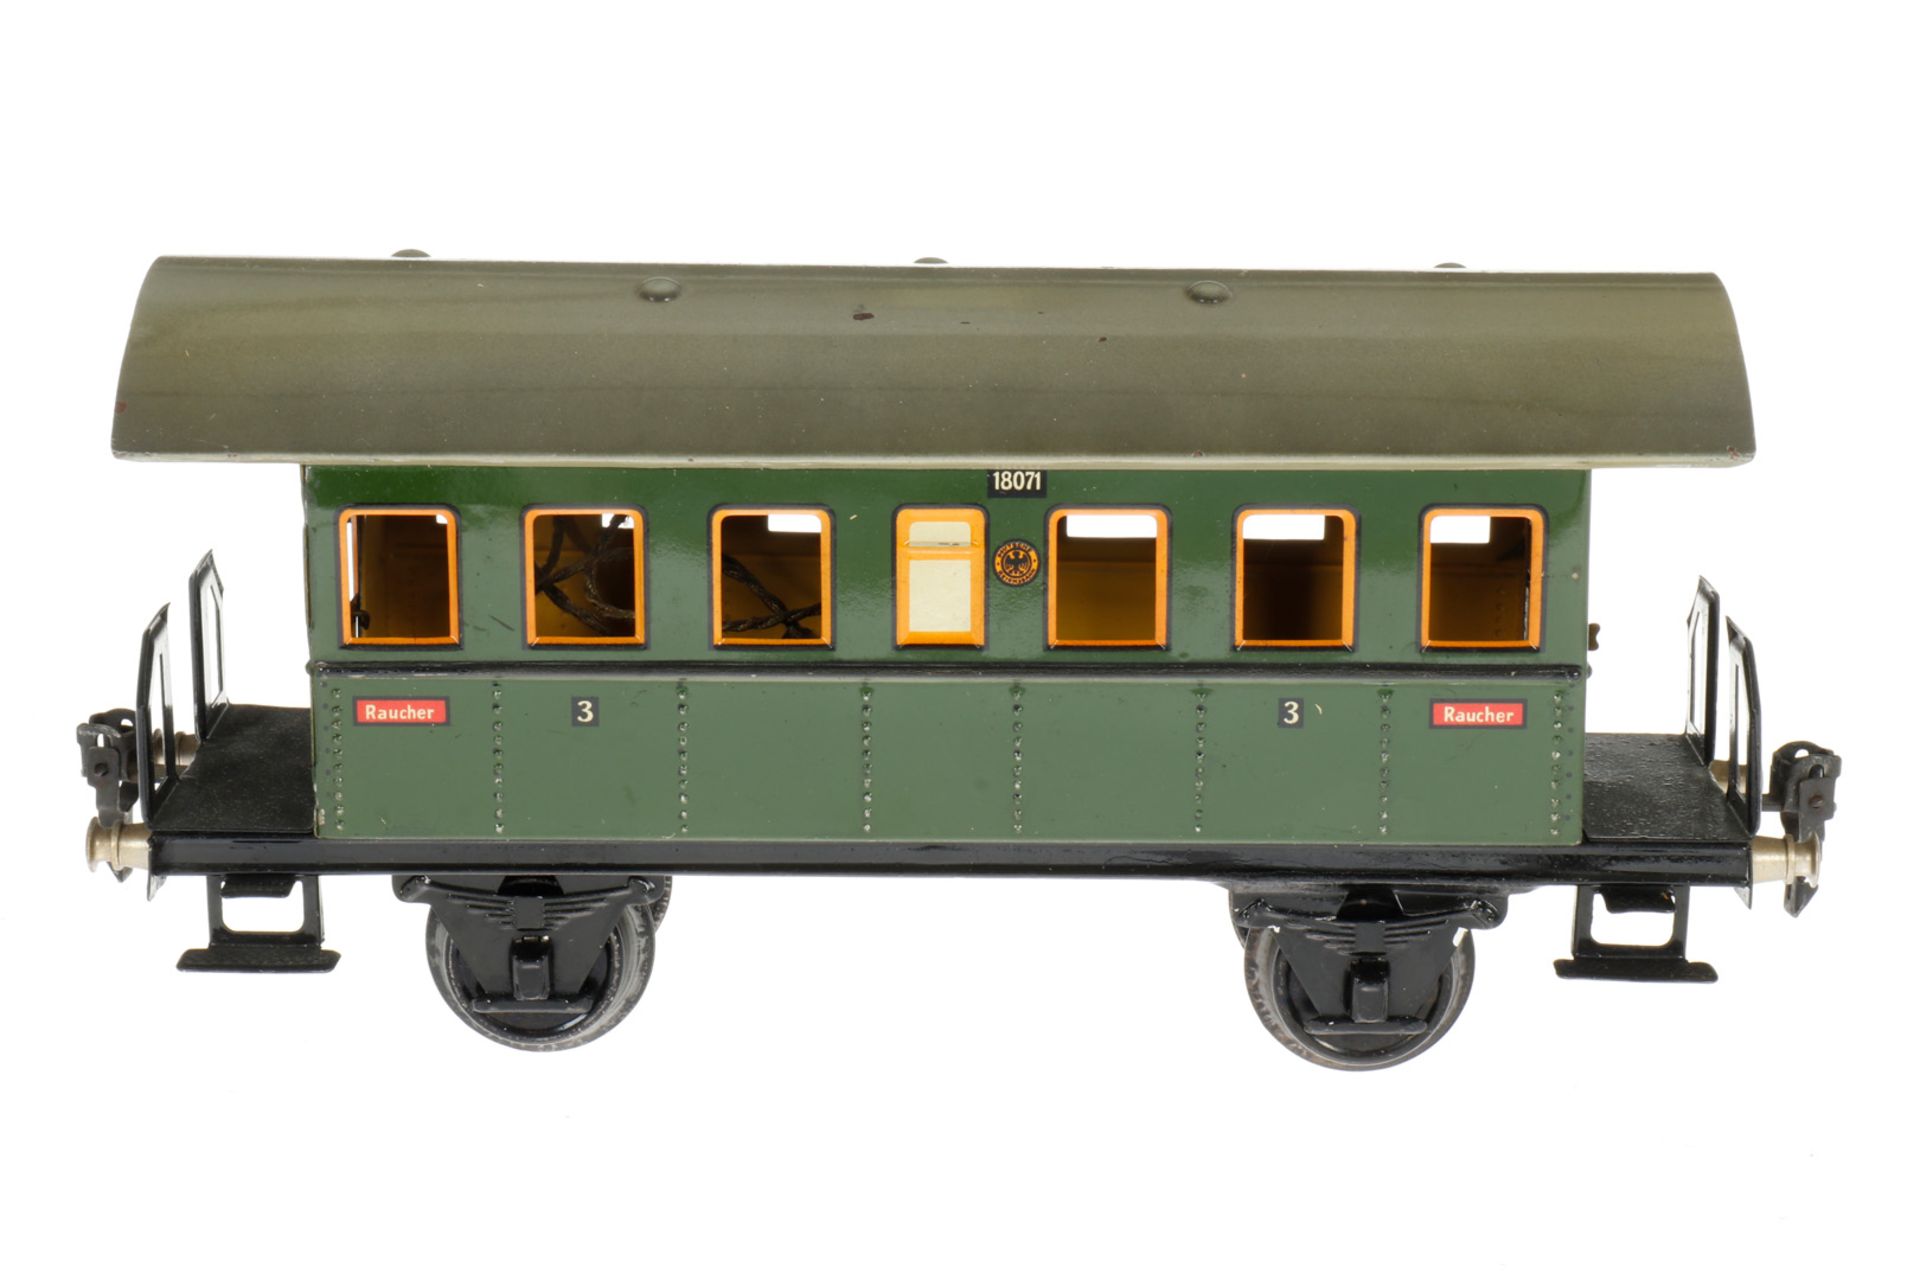 Märklin Personenwagen 1807, S 1, CL, mit 2 AT, LS an Rahmenbereichen ausgeb., gealterter Lack, L 27,